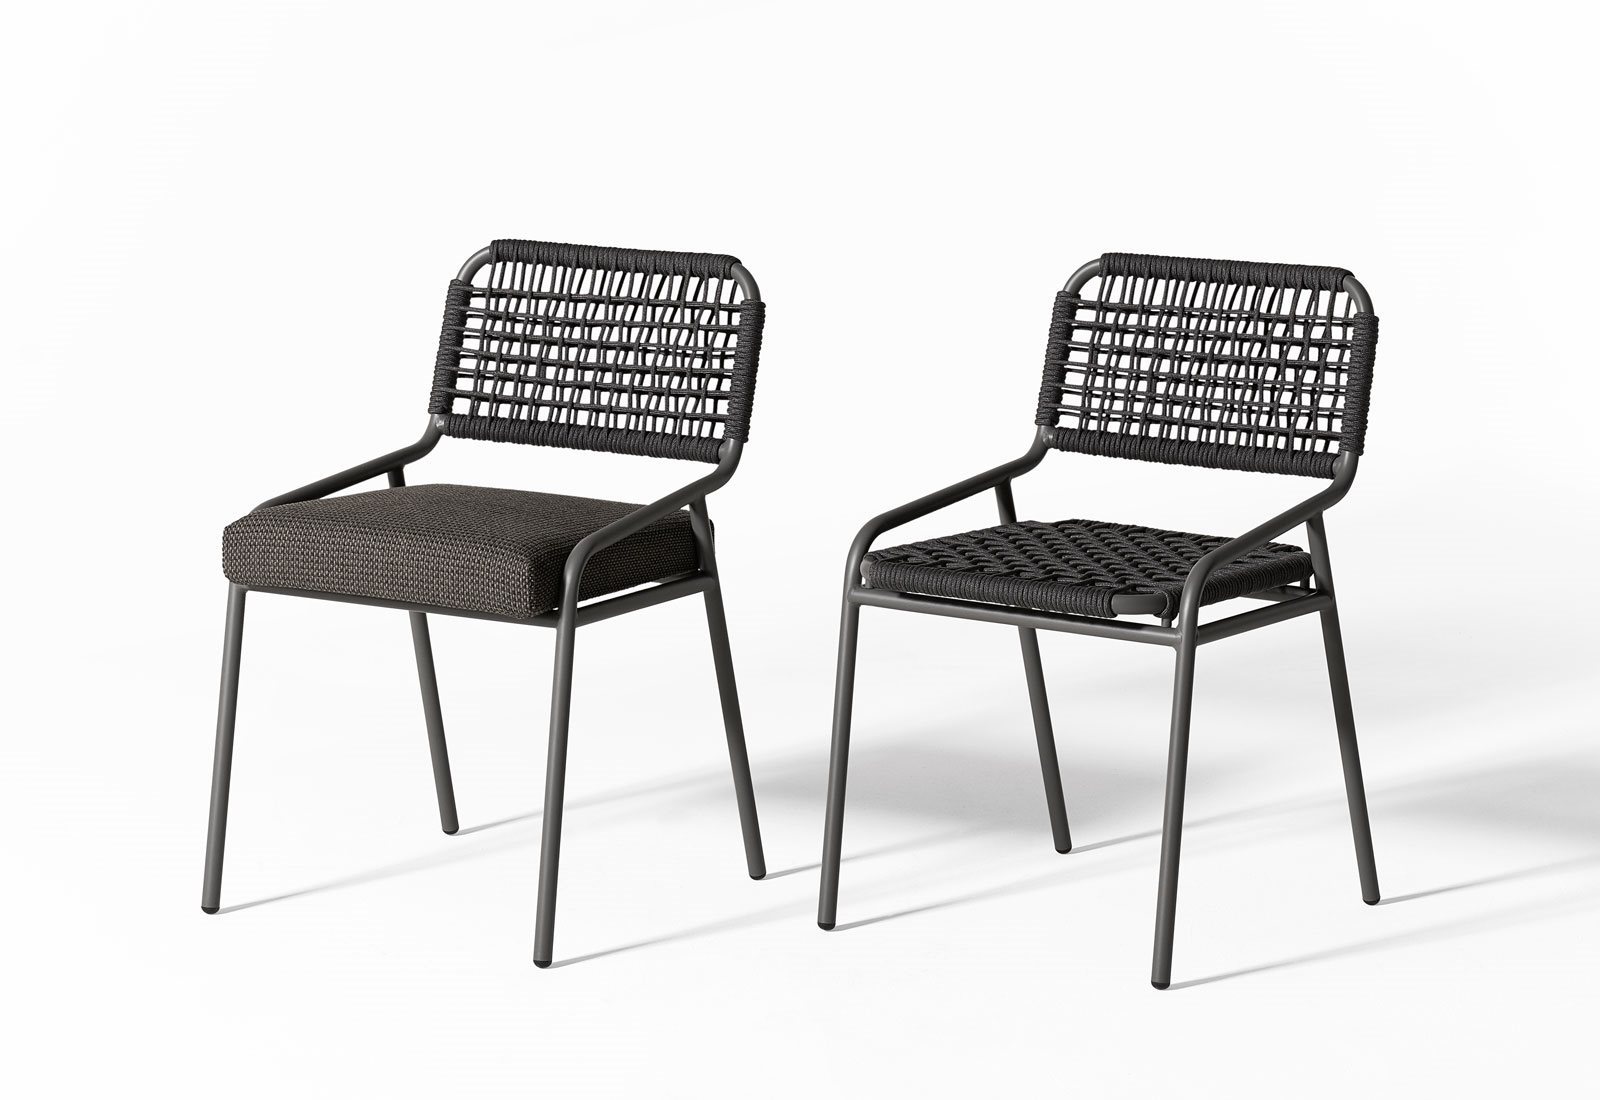 Tai-open-air-chair-05-1600x1100